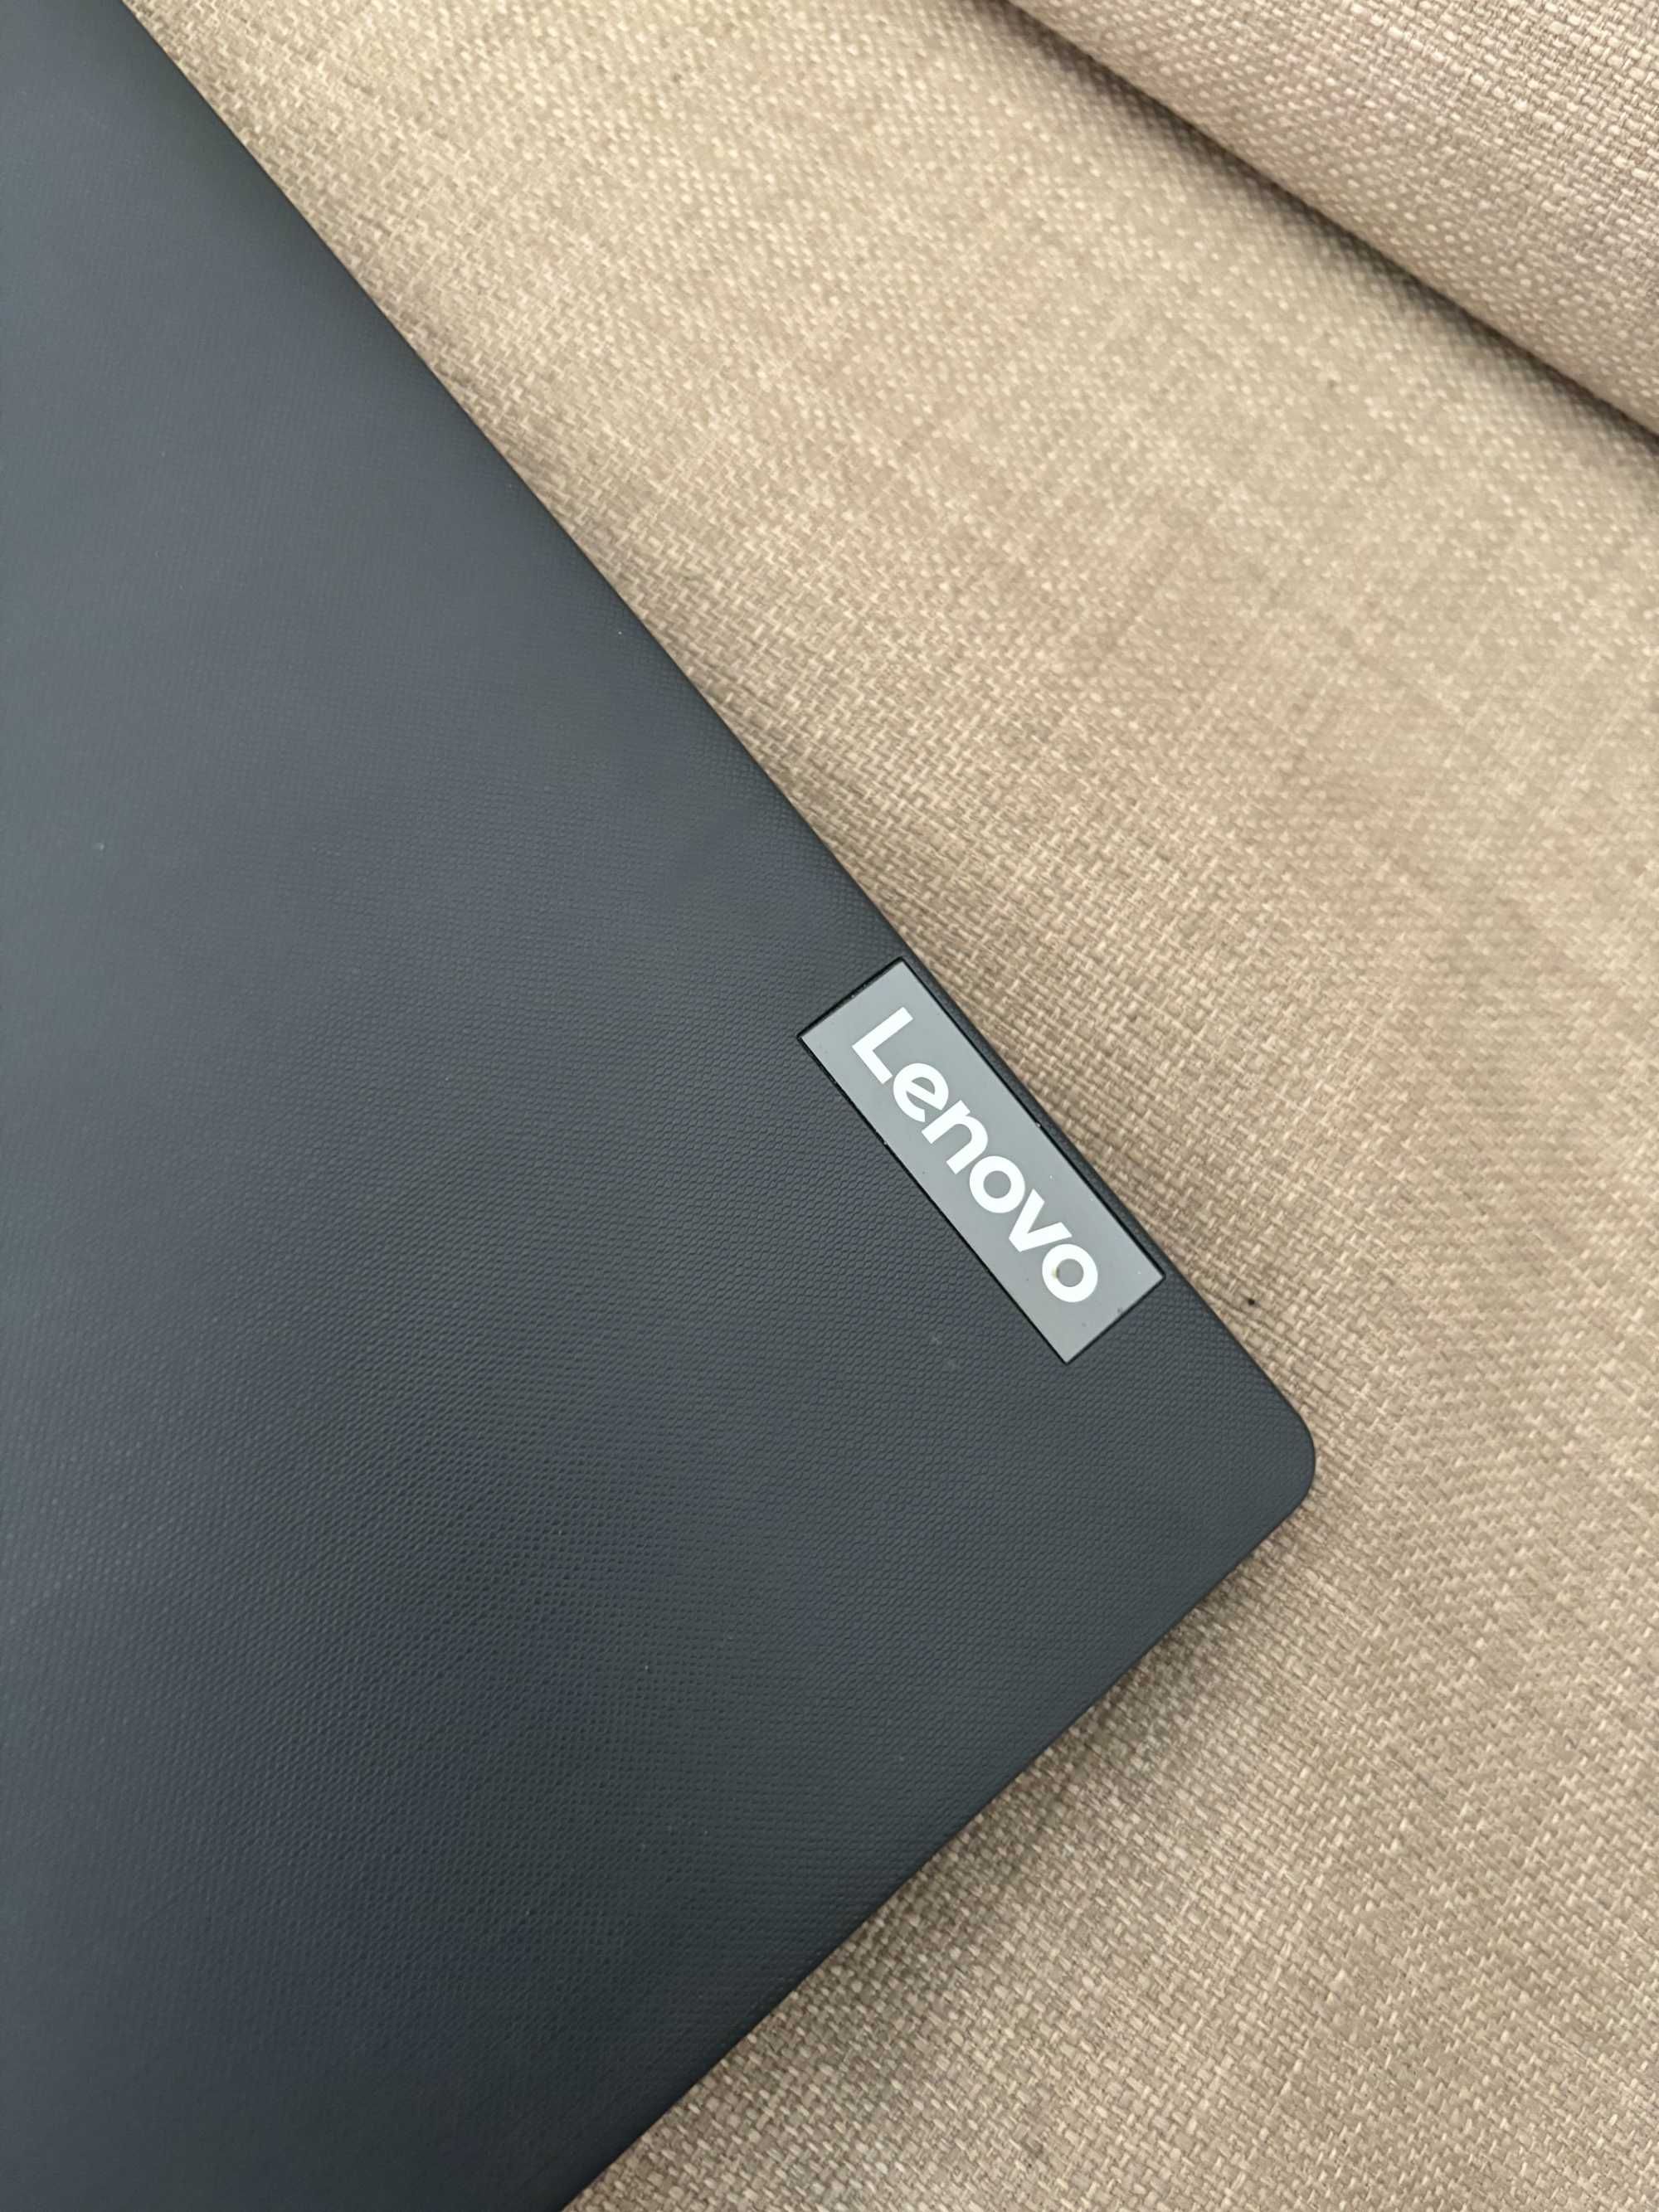 Laptop Lenovo w bardzo dobrym stanie